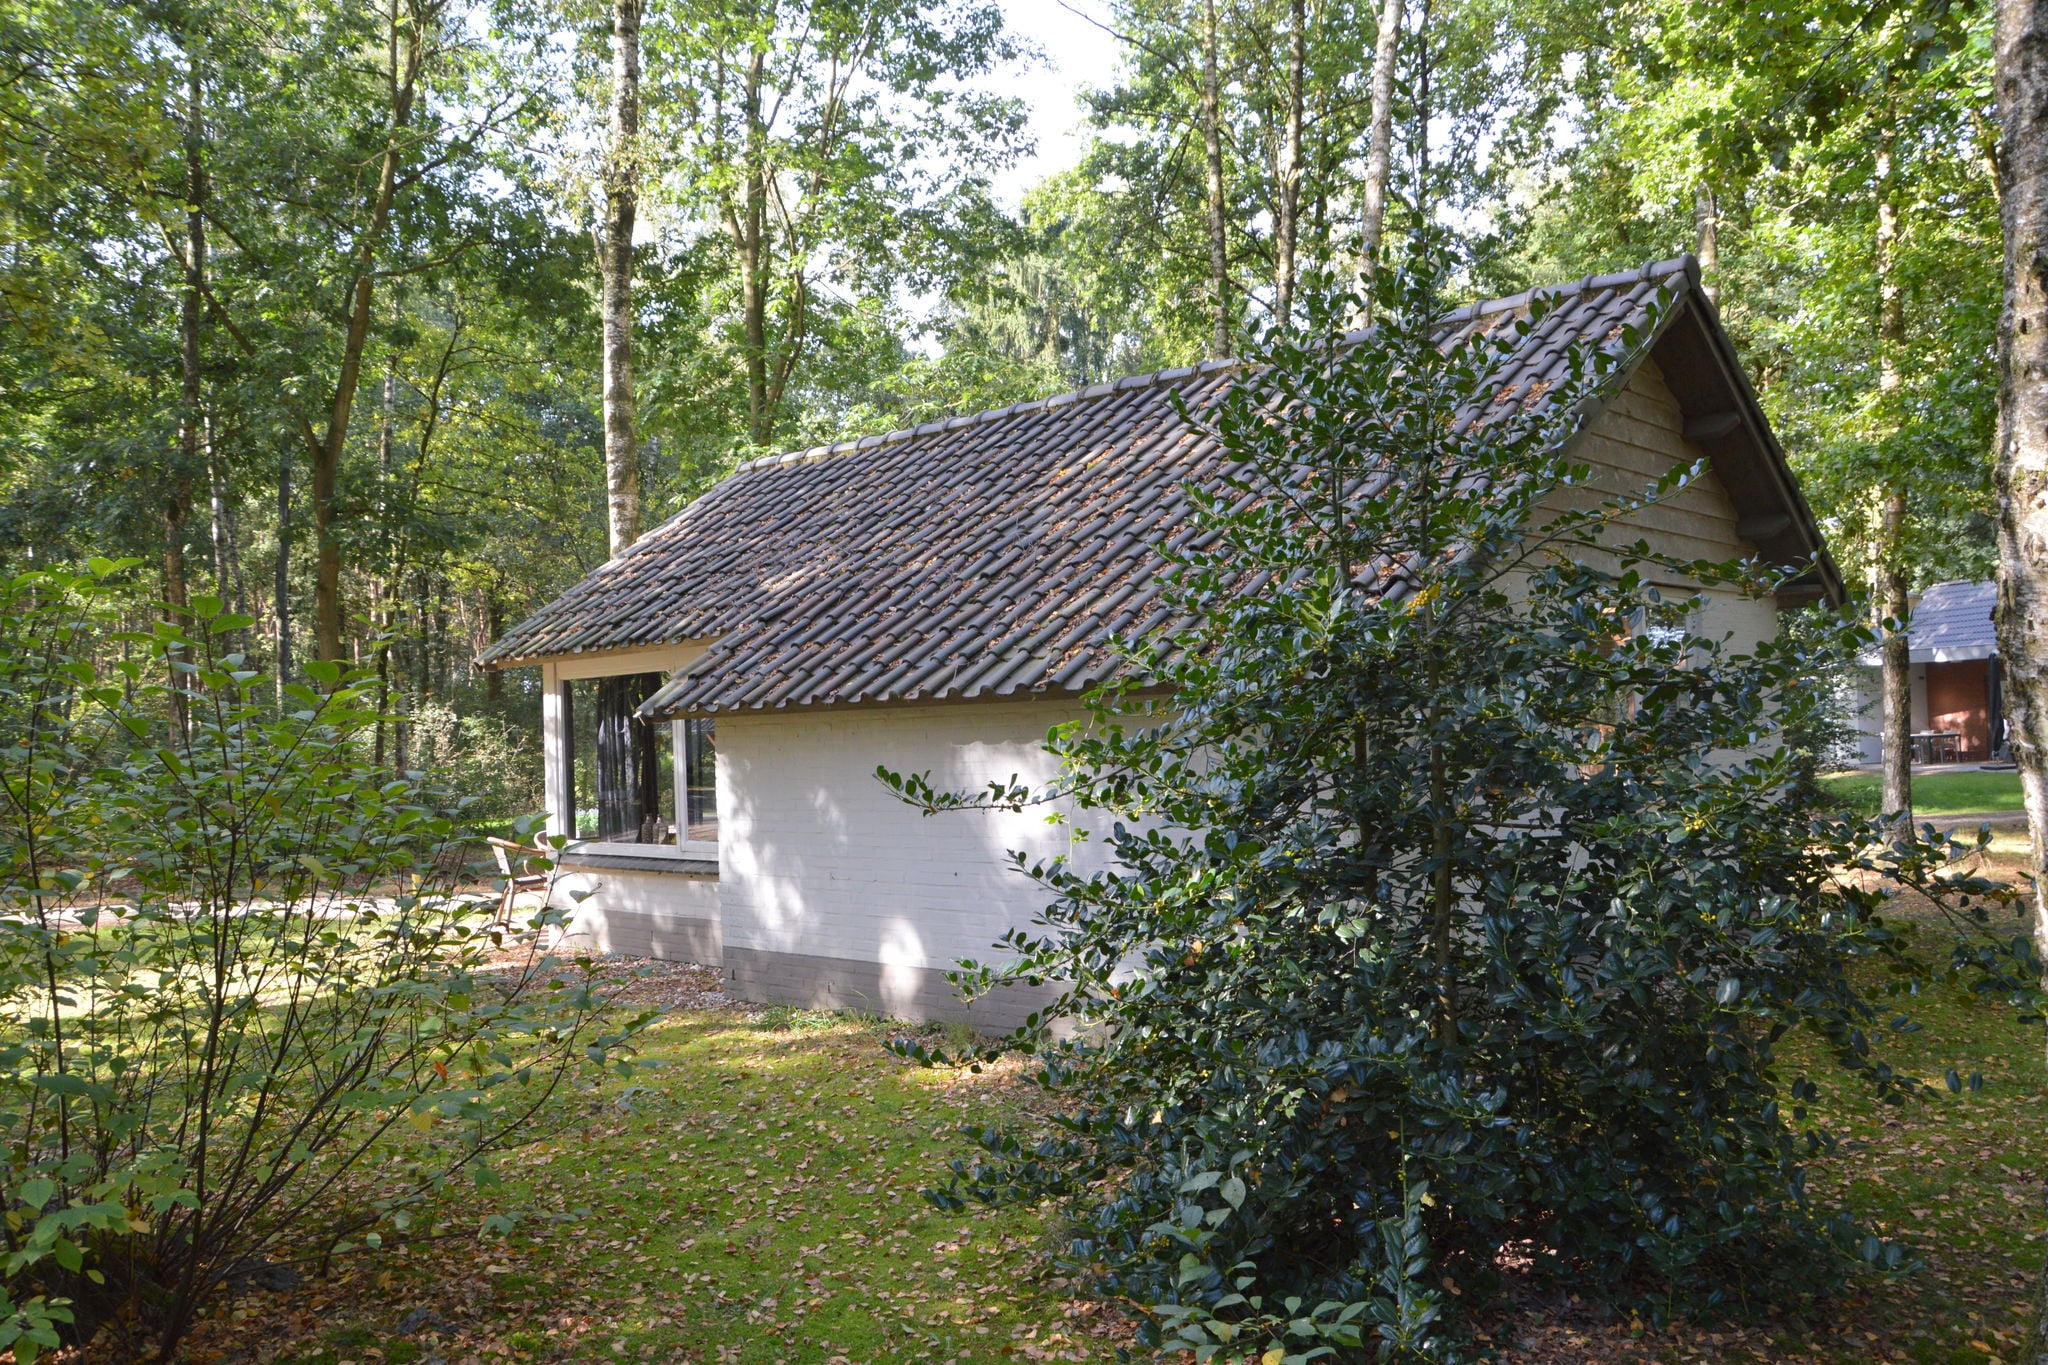 Detached cottage on quiet park